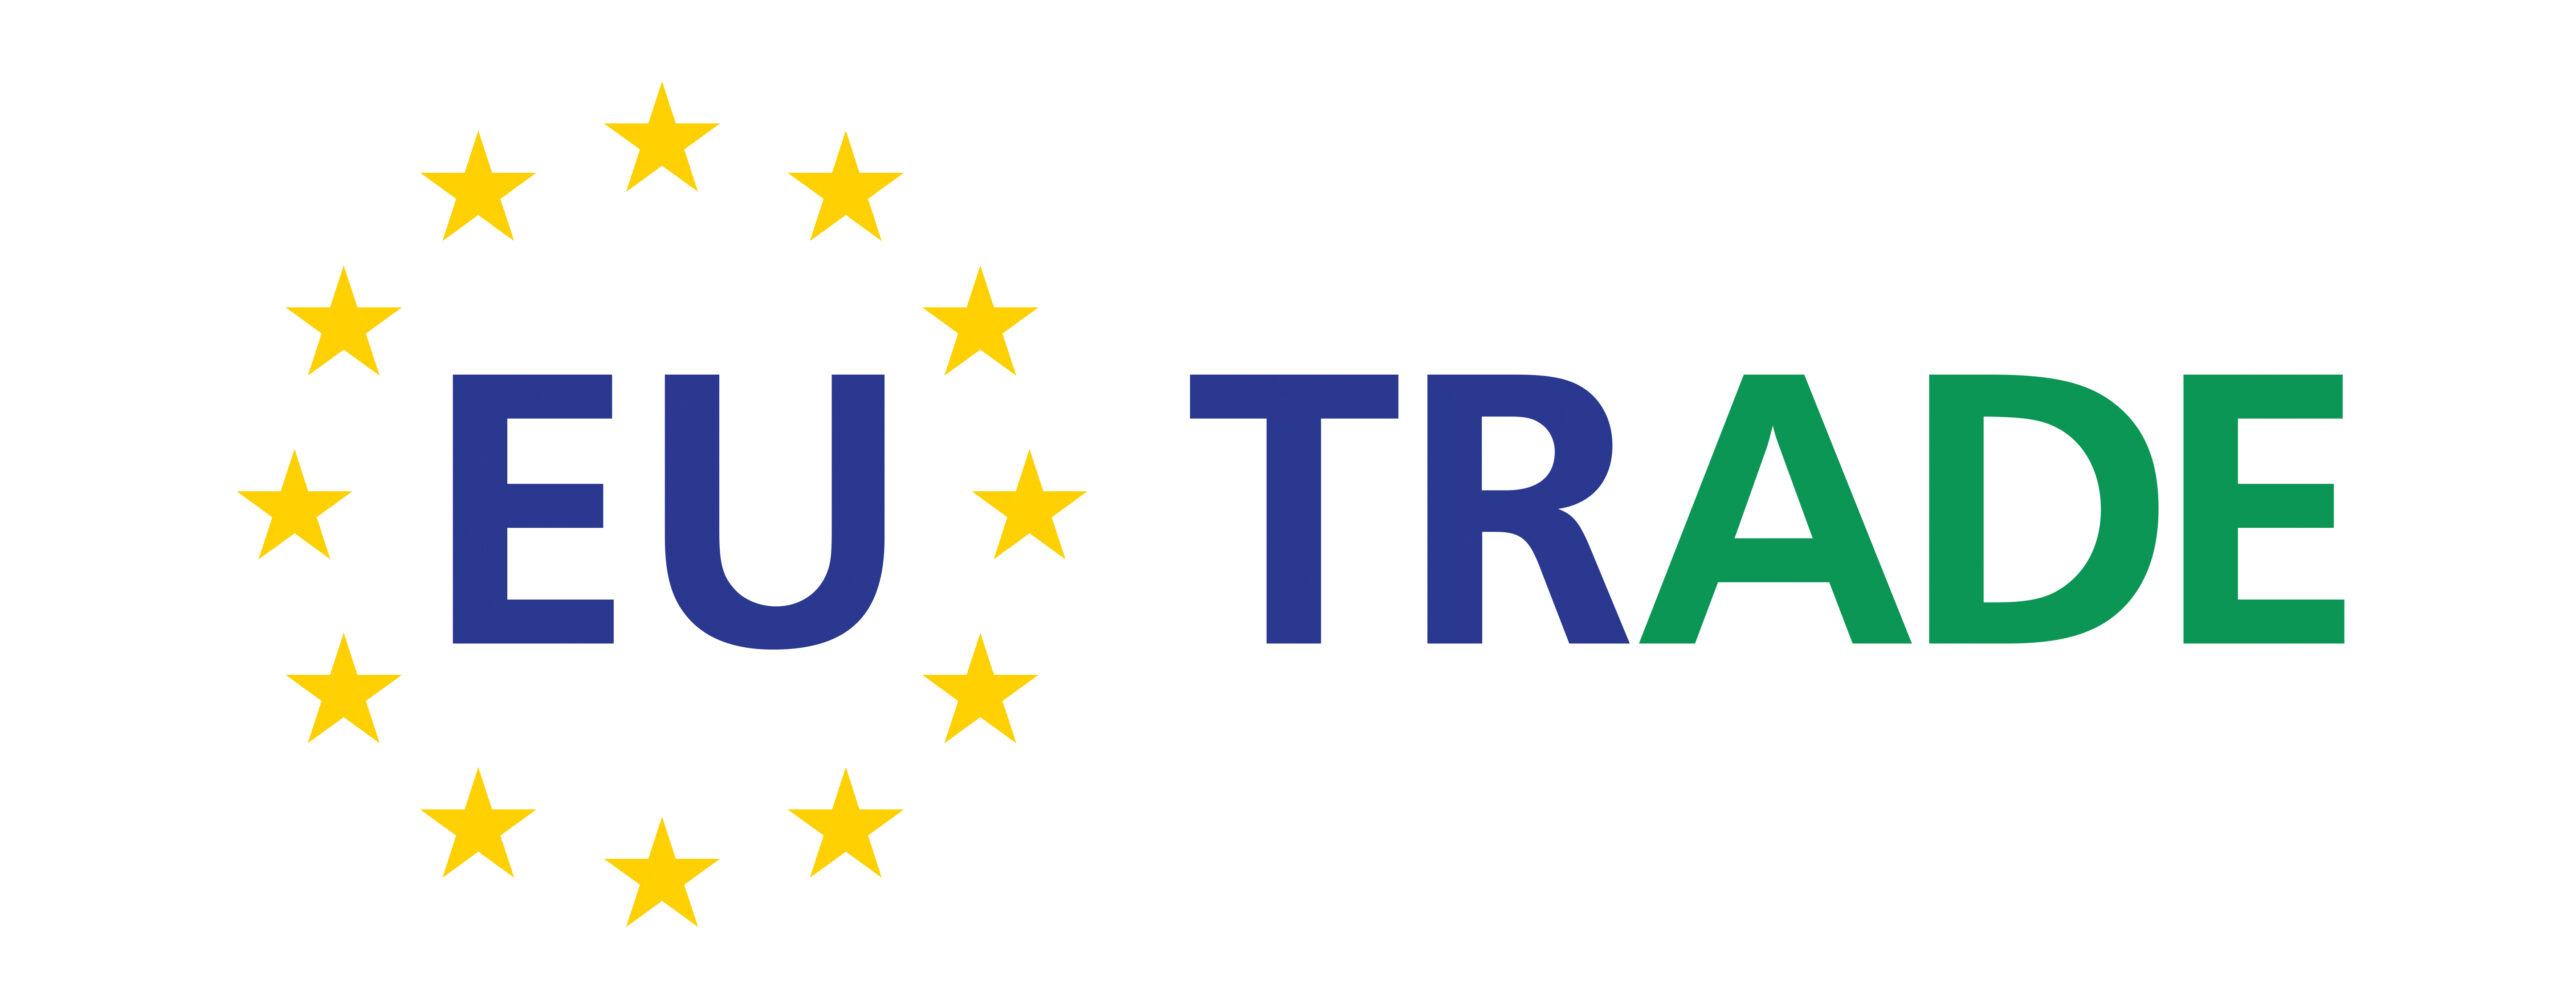 EU-TRADE - Jean Monnet Module